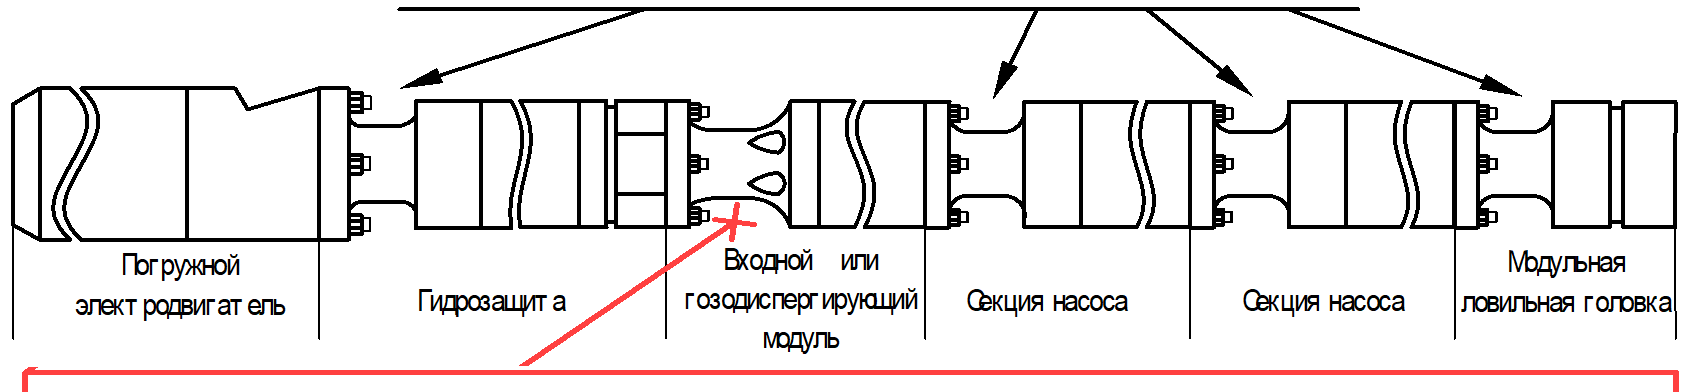 Схема установки протектолайзеров 